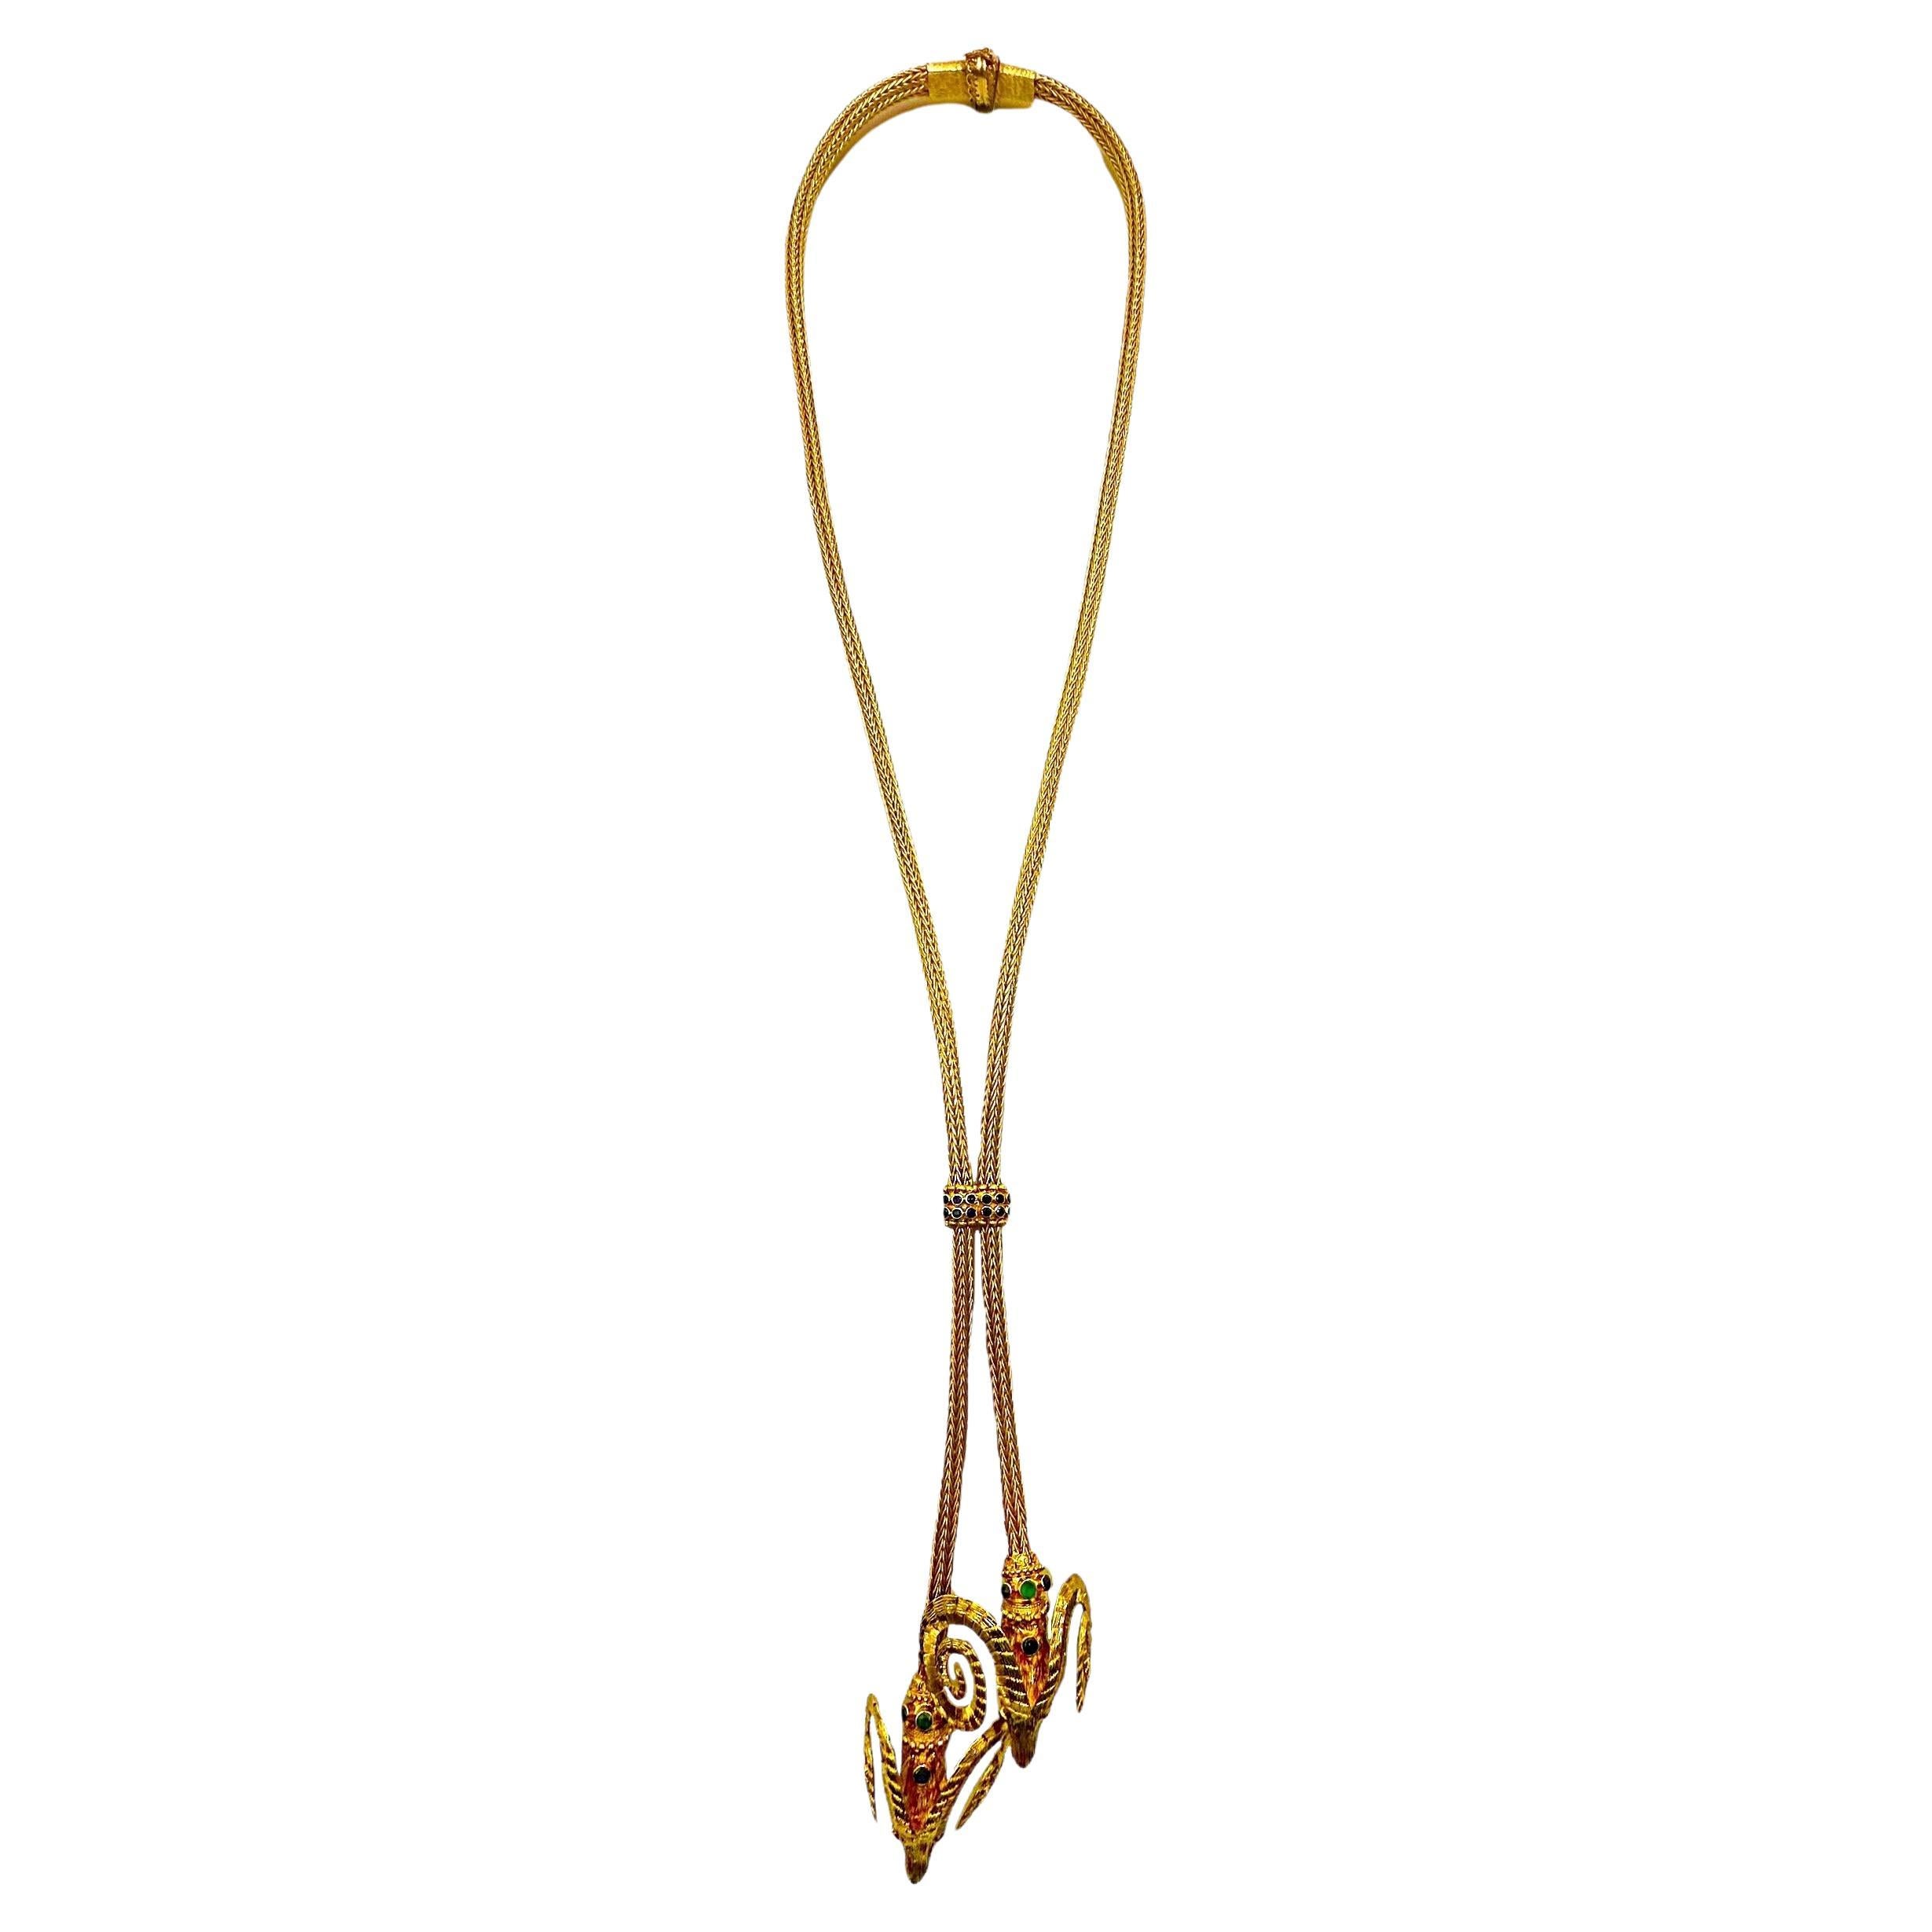 Diese Lalaounis Halskette aus 18 Karat Gelbgold mit doppeltem Widderkopf ist ein wahrhaft prächtiges Beispiel für  das Angebot der geschätzten griechischen Designer. Vom Verschluss bis zur Spitze besteht die Halskette aus geflochtenen, runden